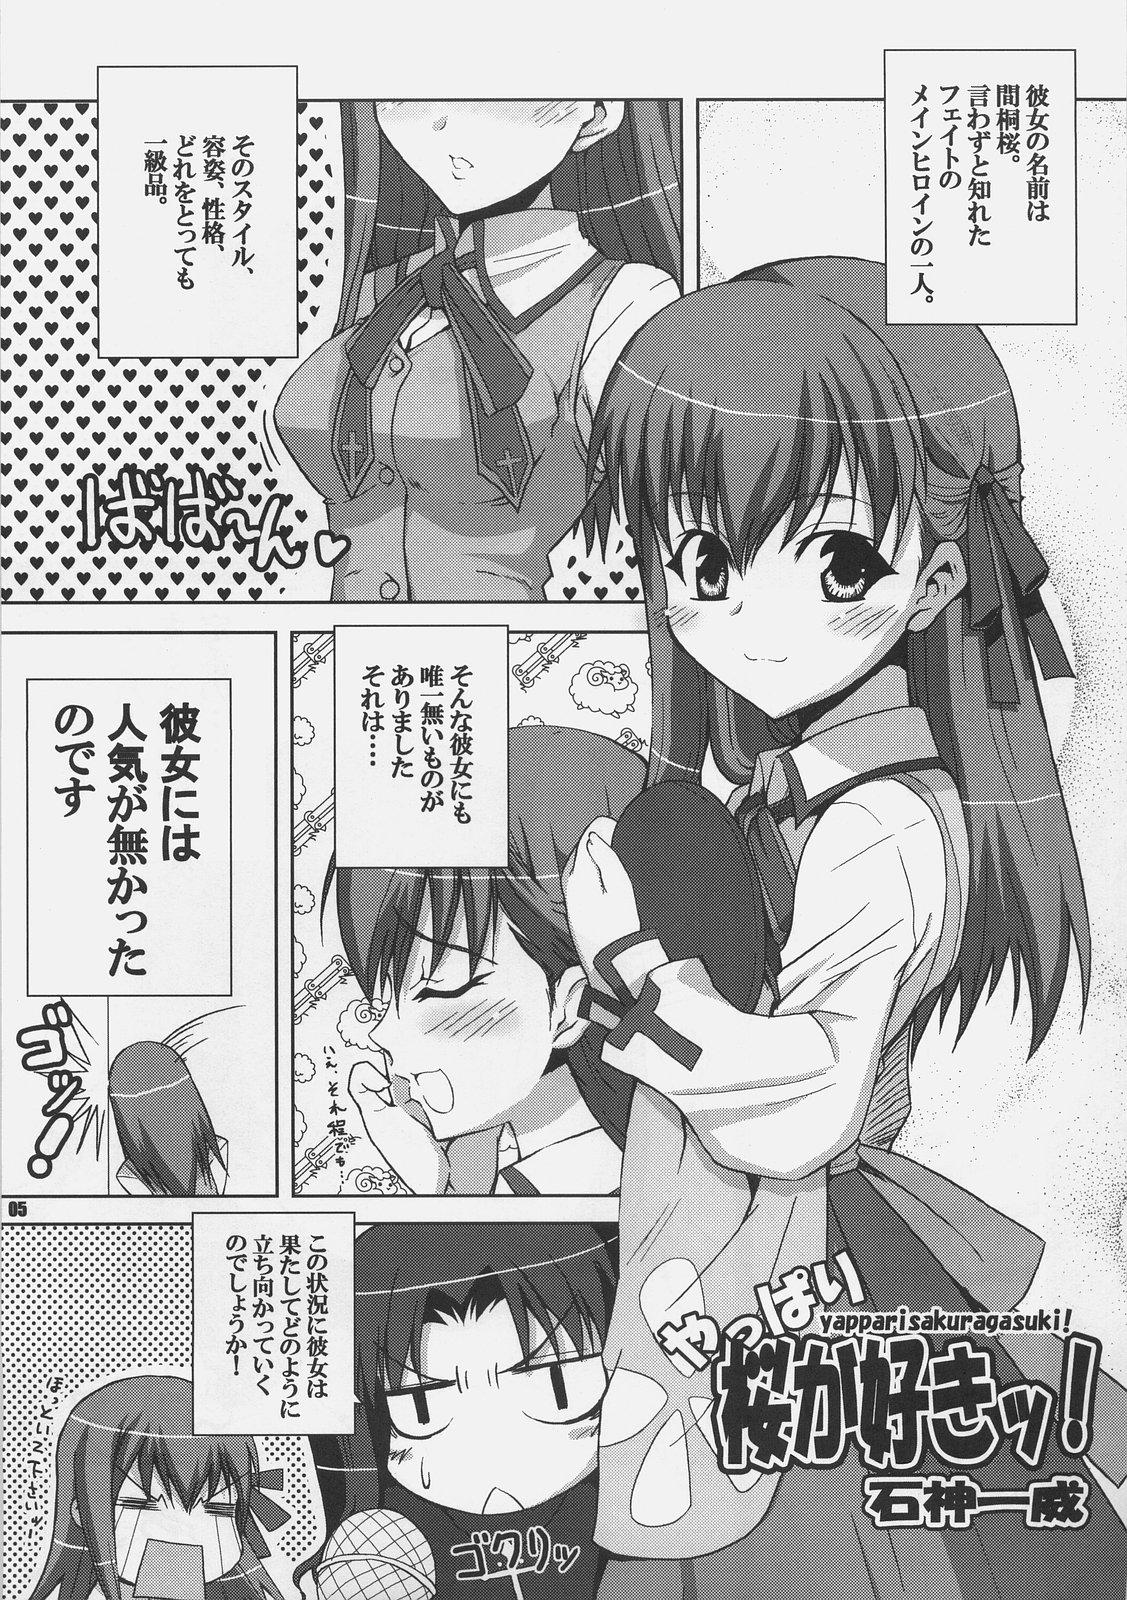 Licking Yappari Sakuragasuki!! - Fate stay night Jeans - Page 4